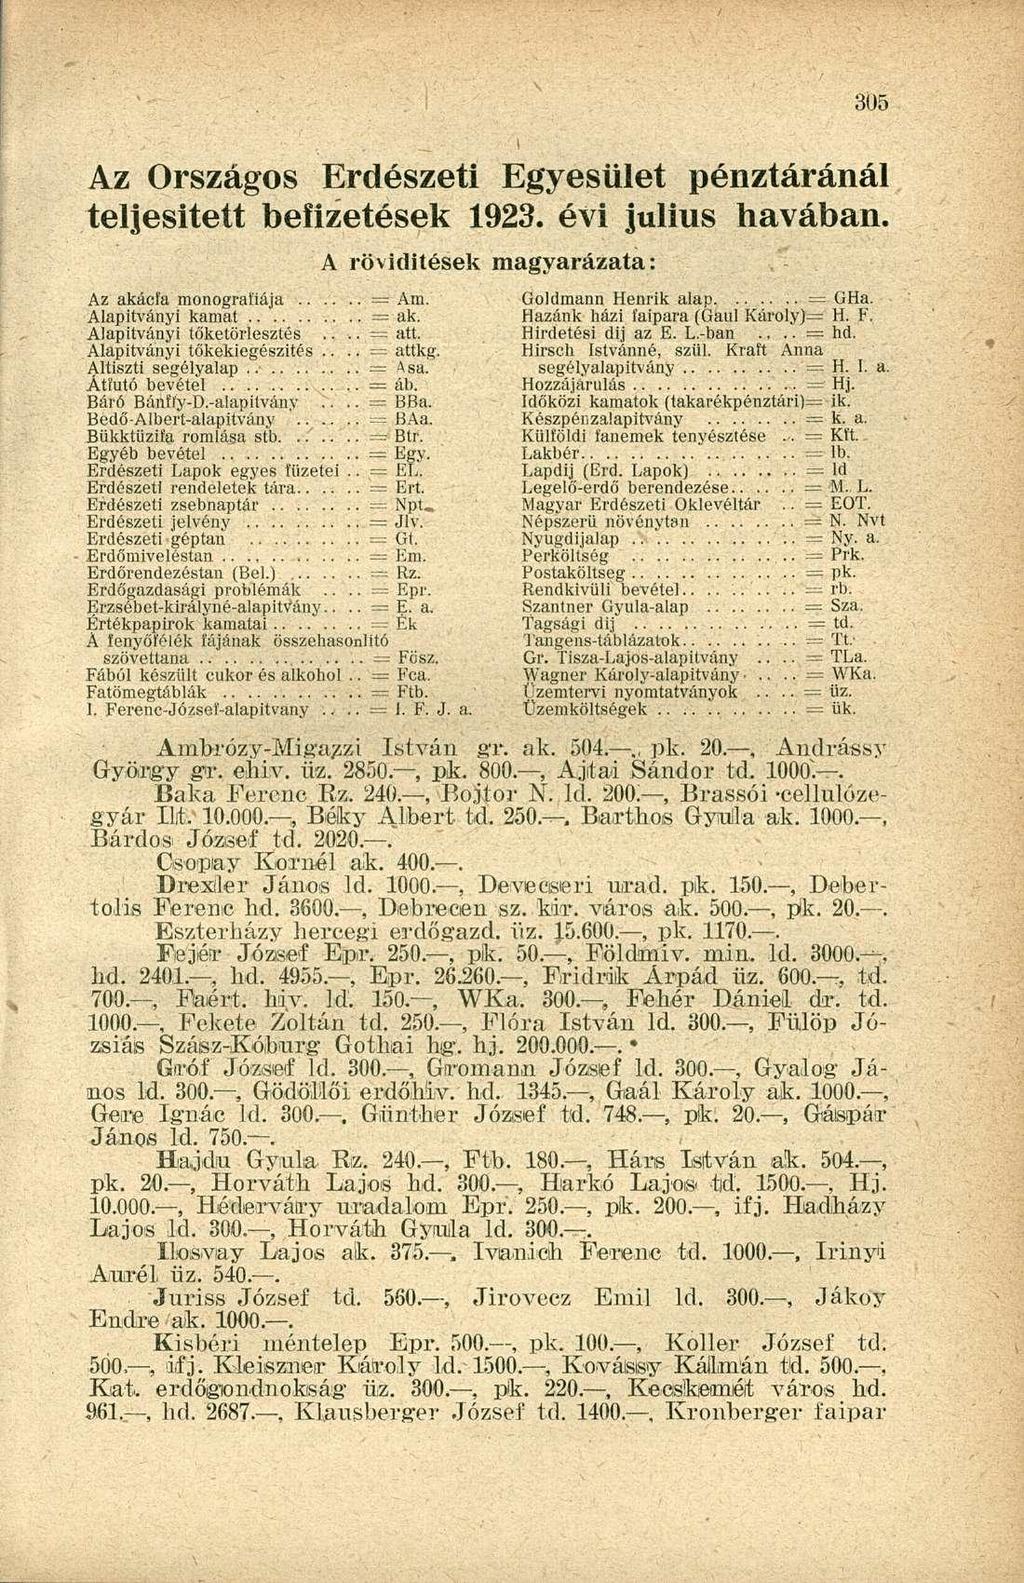 Az Országos Erdészeti Egyesület pénztáránál teljesitett befizetések 1923. évi július havában. Az akácfa monográfiája = Am. Alapítványi kamat = ak. Alapítványi töketörlesztés.... = att.